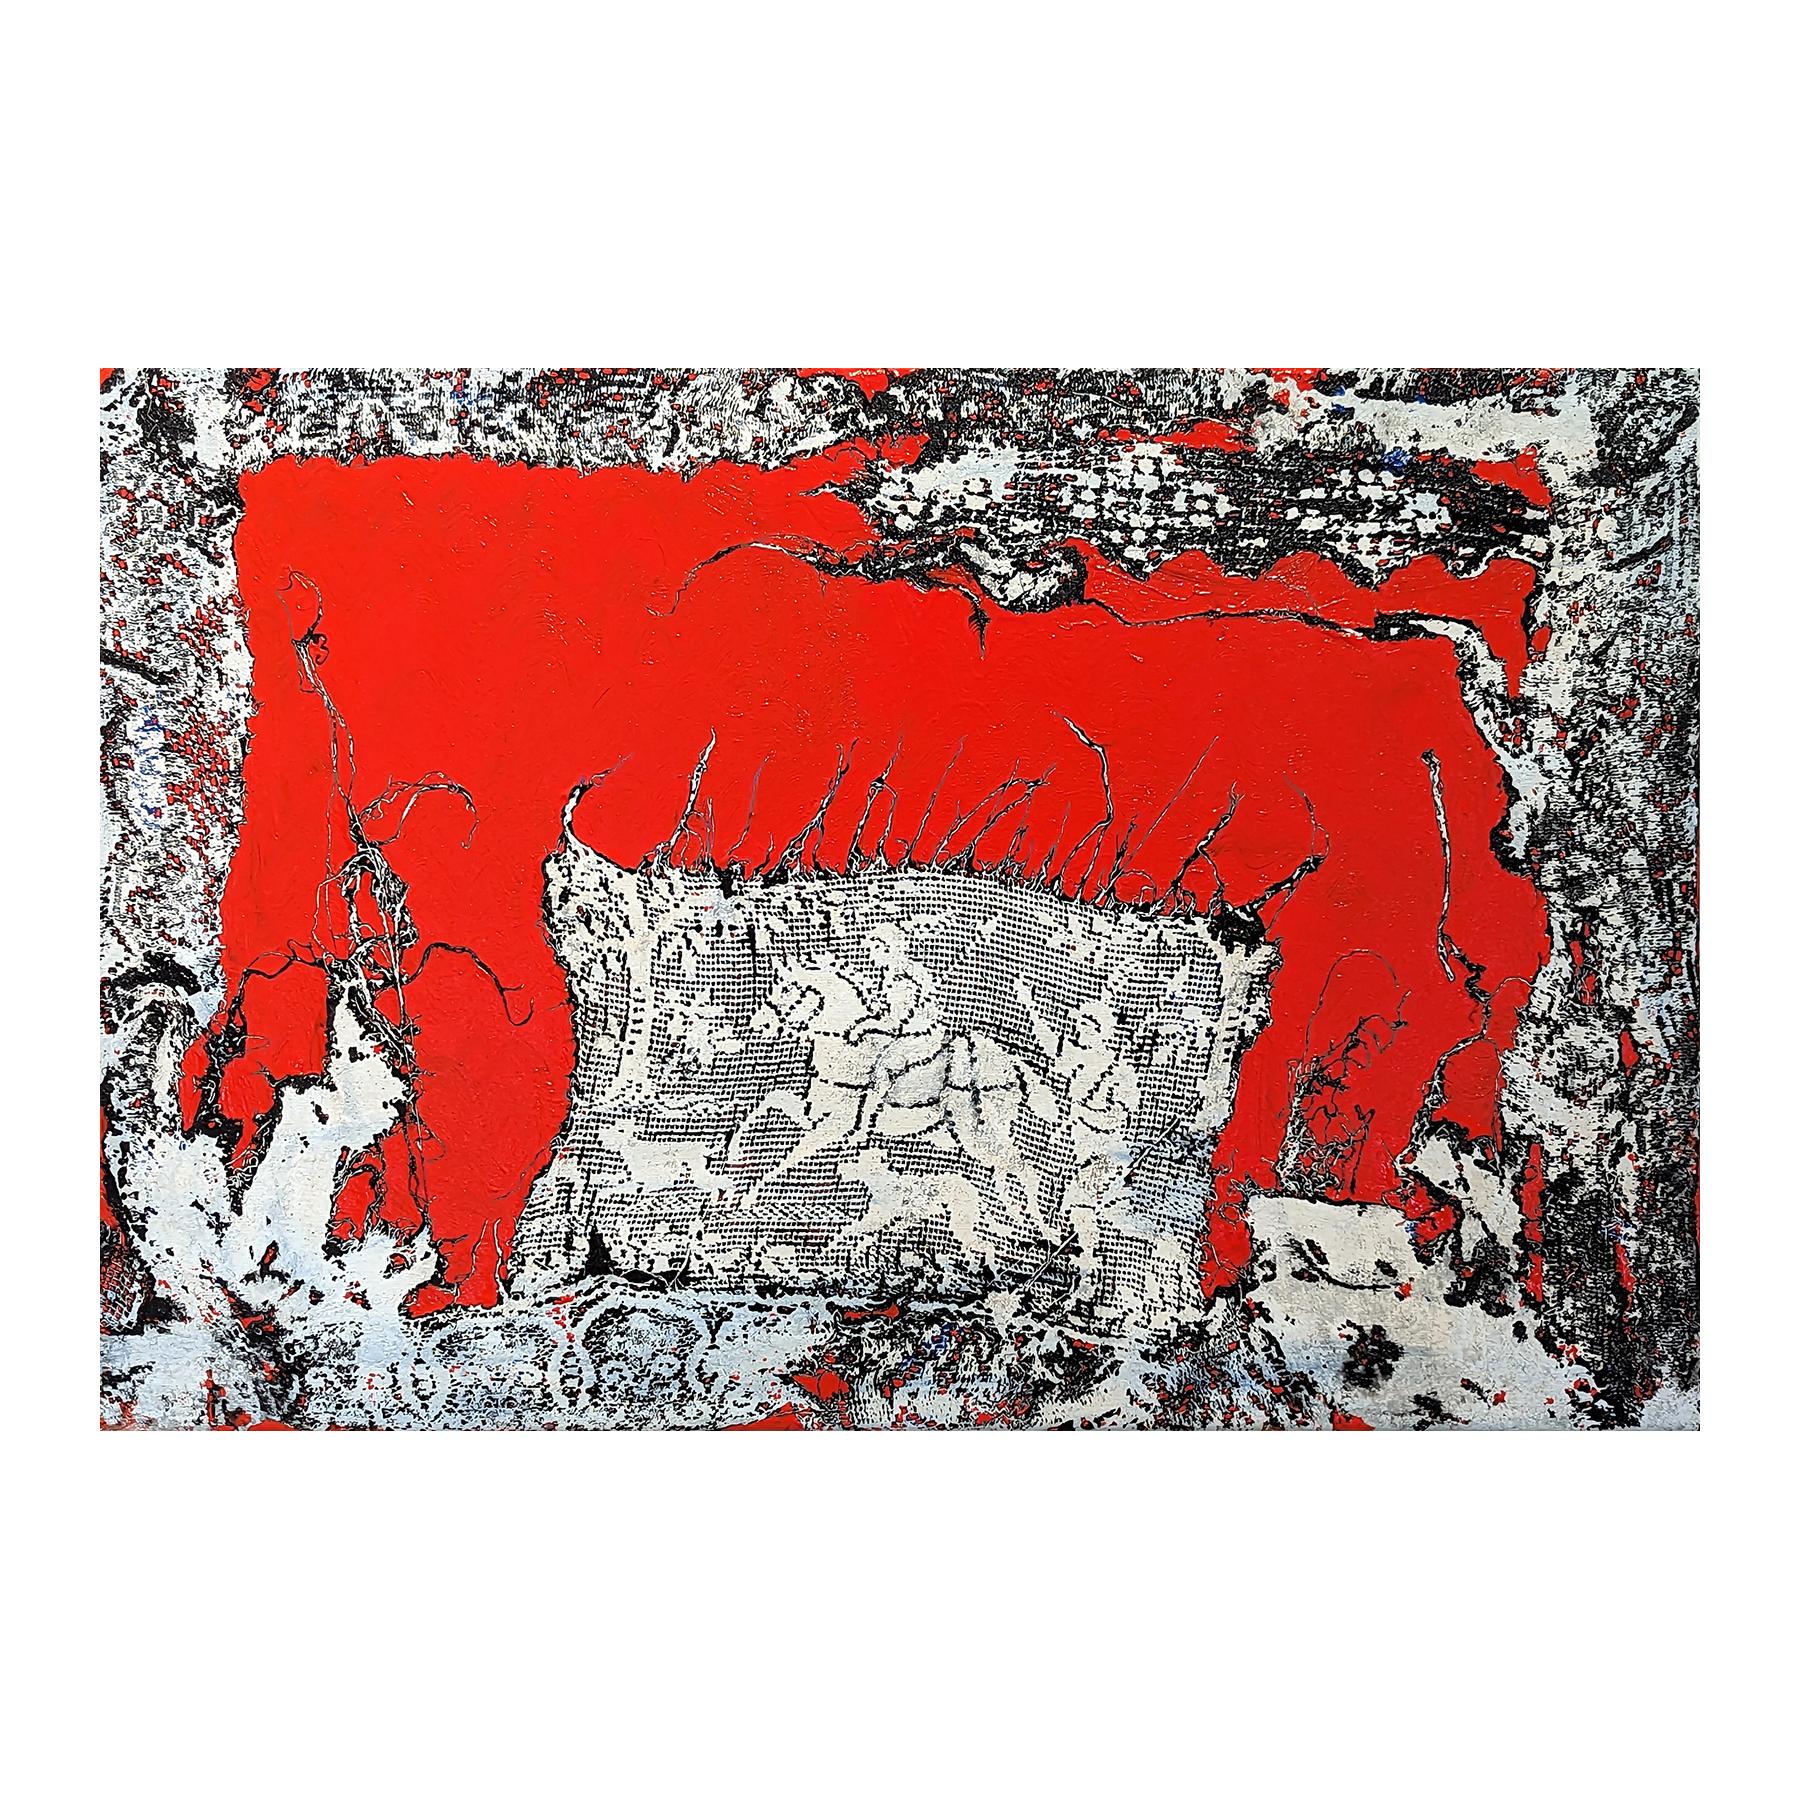 Red Hunt Peinture contemporaine en dentelle abstraite rouge, noire et blanche - Painting de Mark Flood